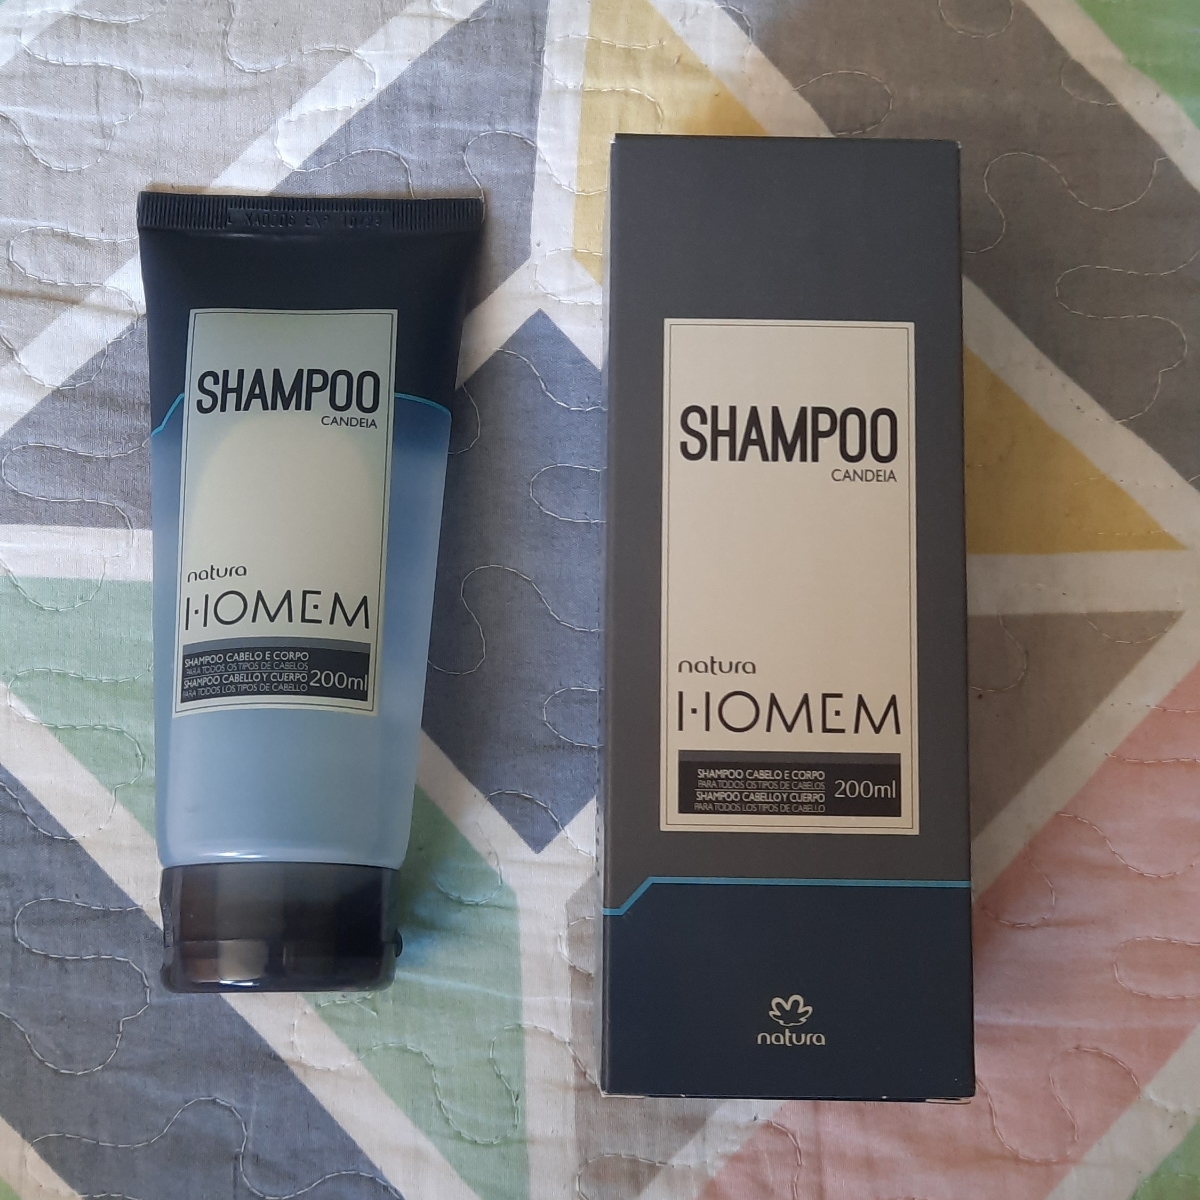 Recensioni su Shampoo Homem Candeia Cabello y Cuerpo di Natura | abillion